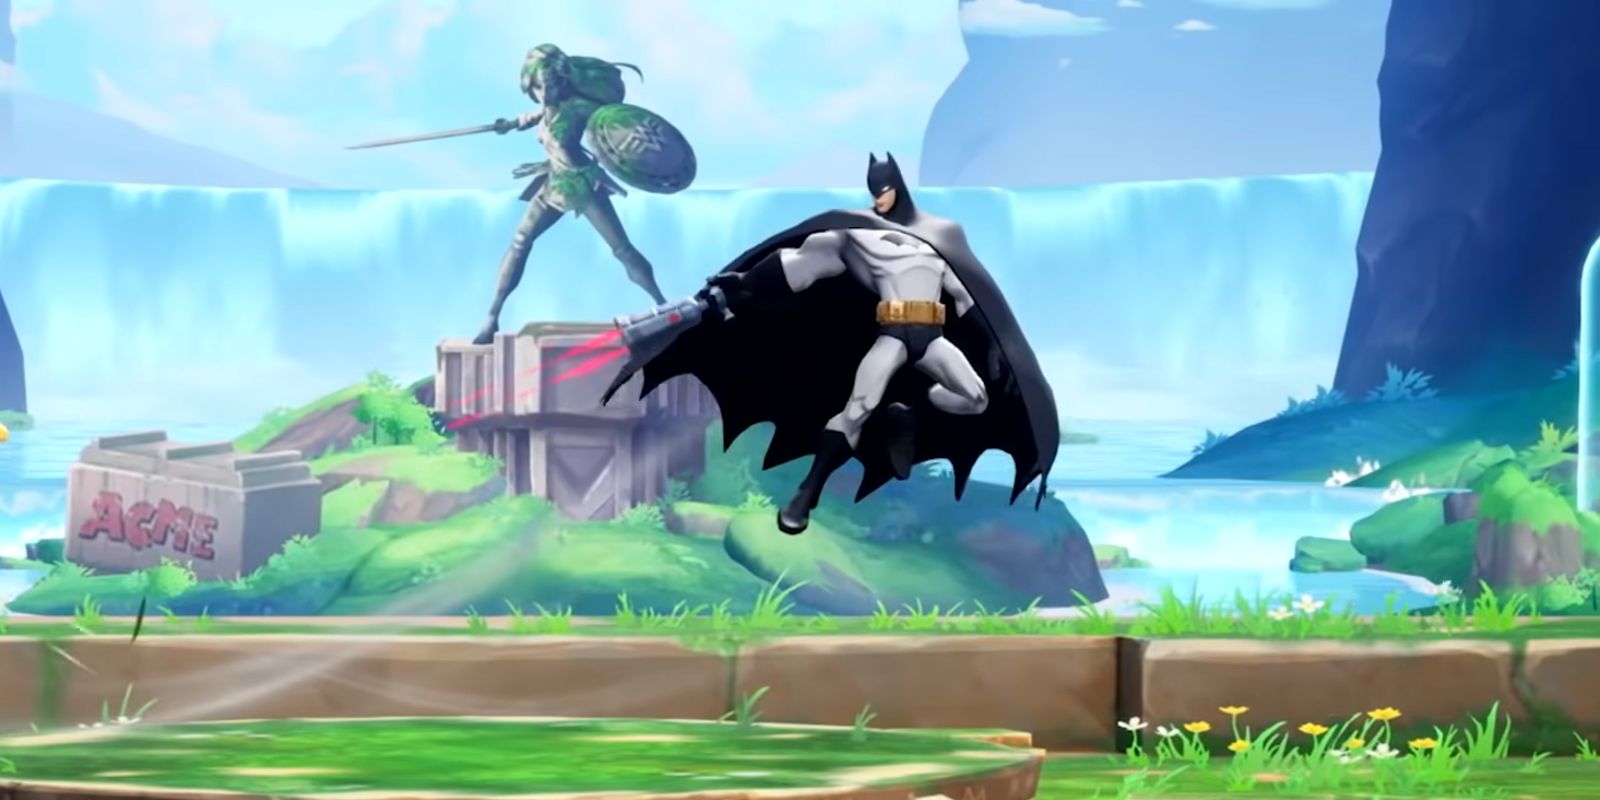 Batman apontando sua arma de grapnel em Themyscira em MultiVersus